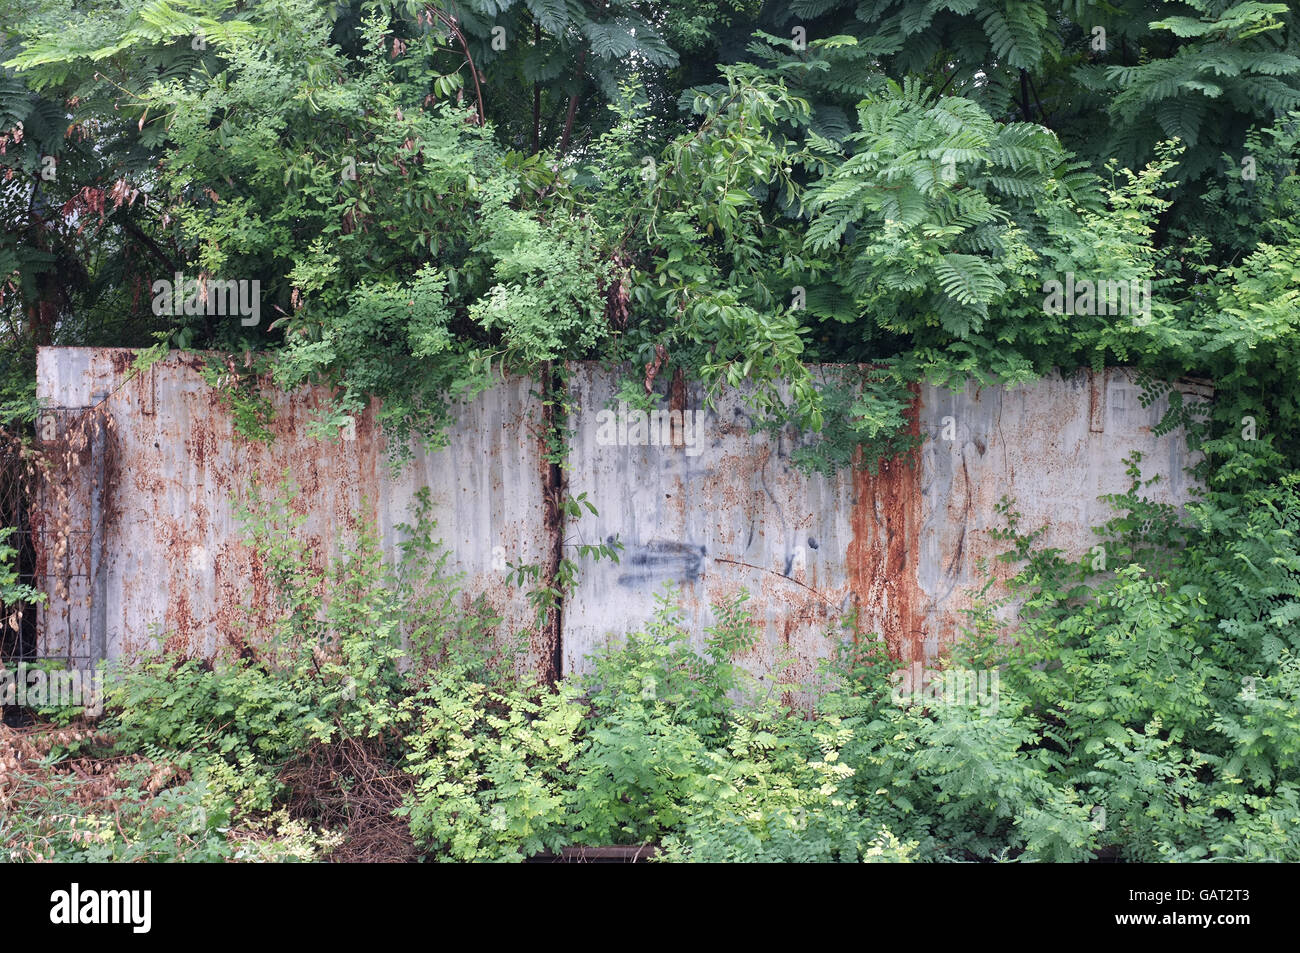 Rusty abandonnés clôture métallique recouverte de plantes et arbres Banque D'Images